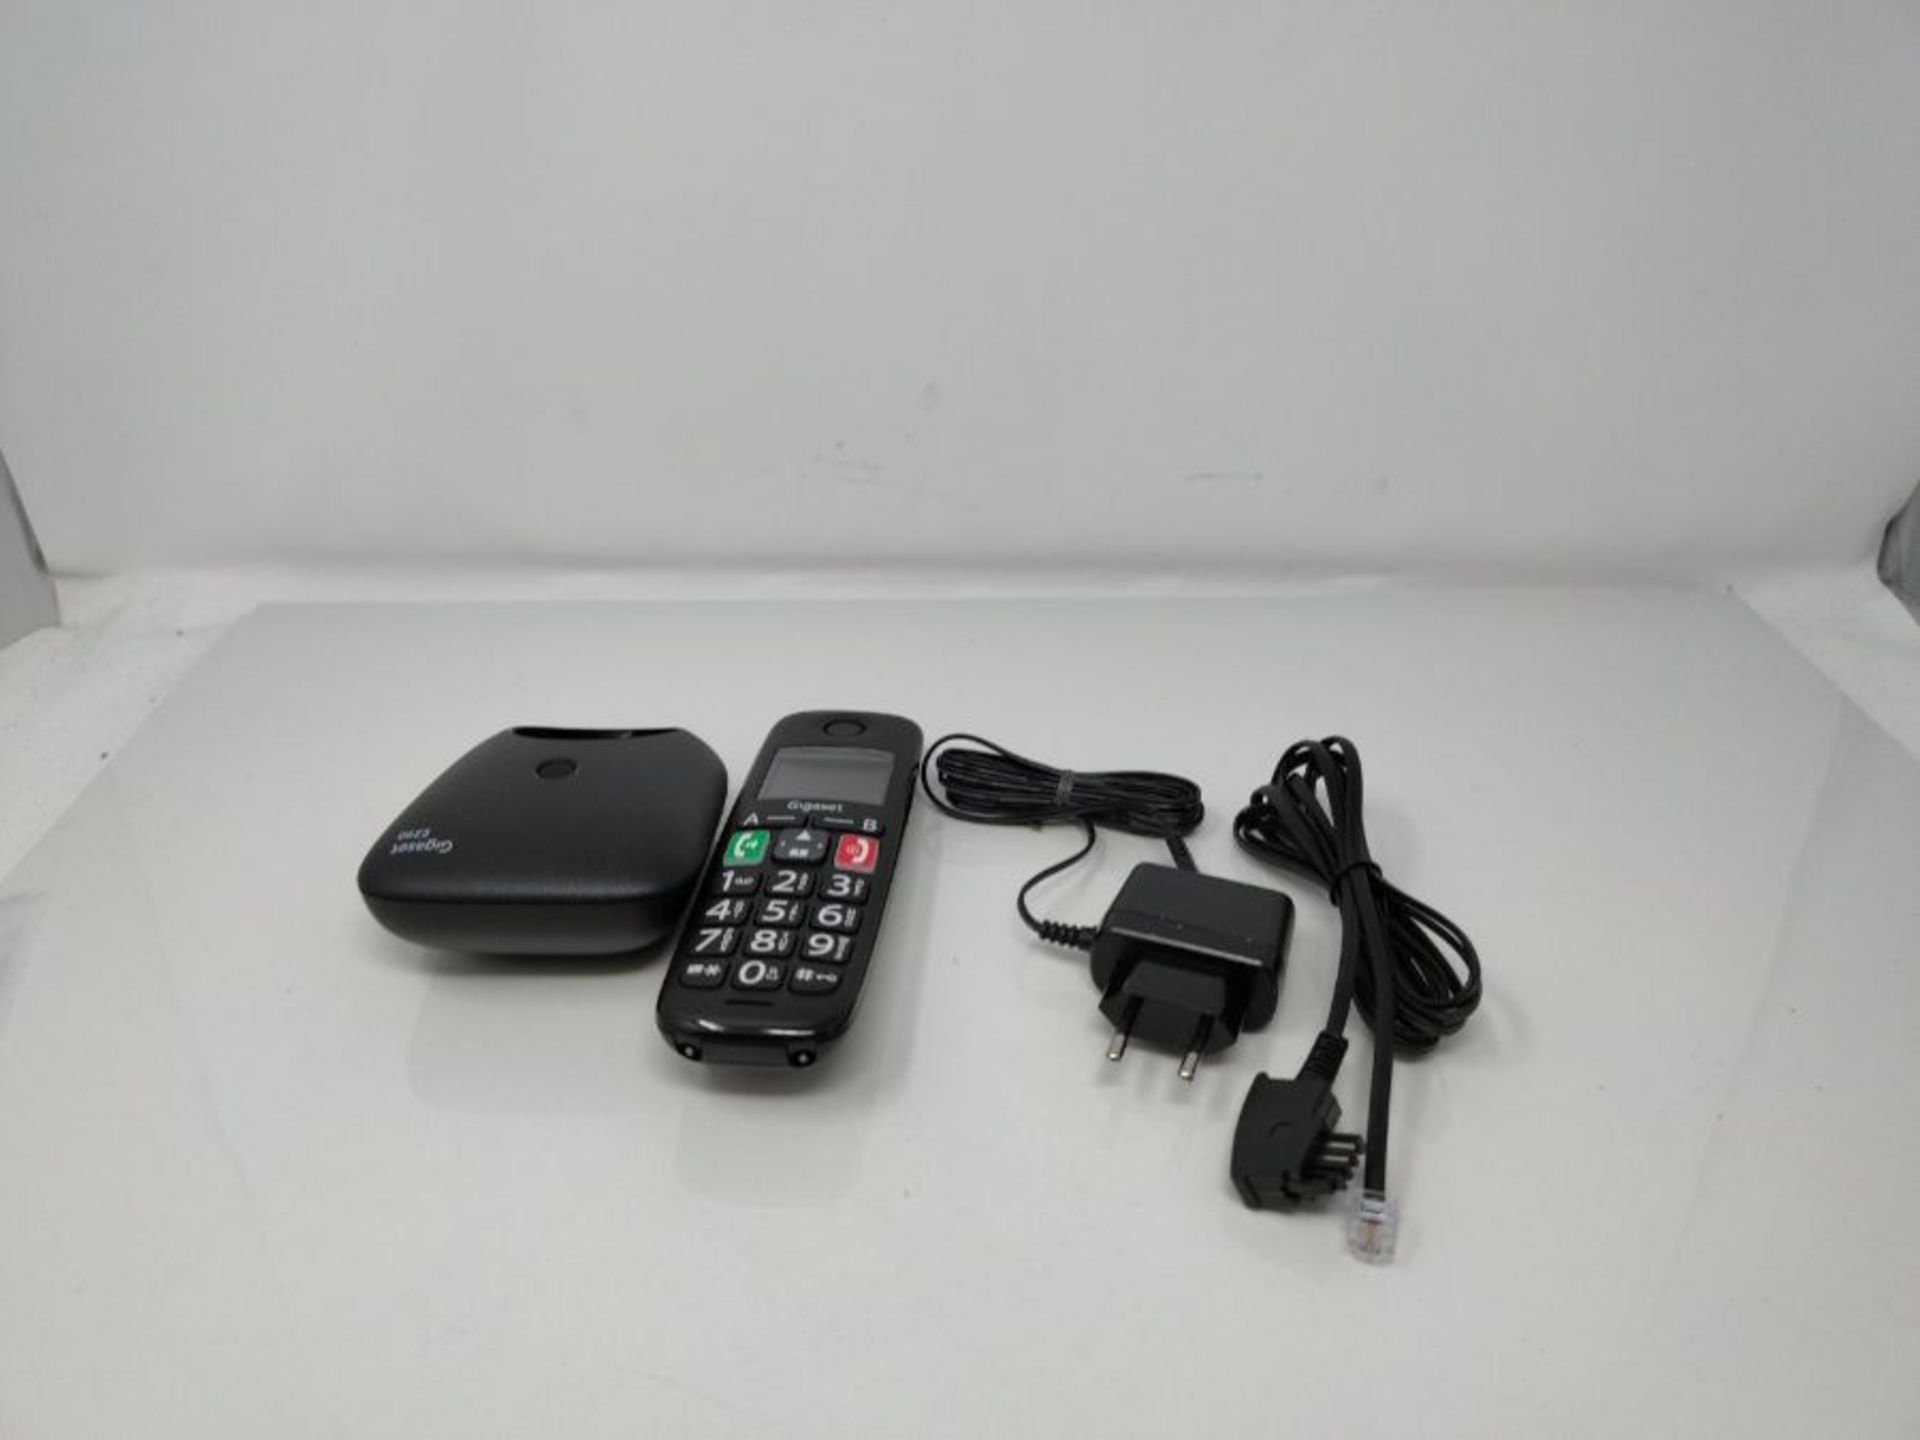 Gigaset E290 - Schnurloses Senioren-Telefon ohne Anrufbeantworter mit großen Tasten - - Image 3 of 3